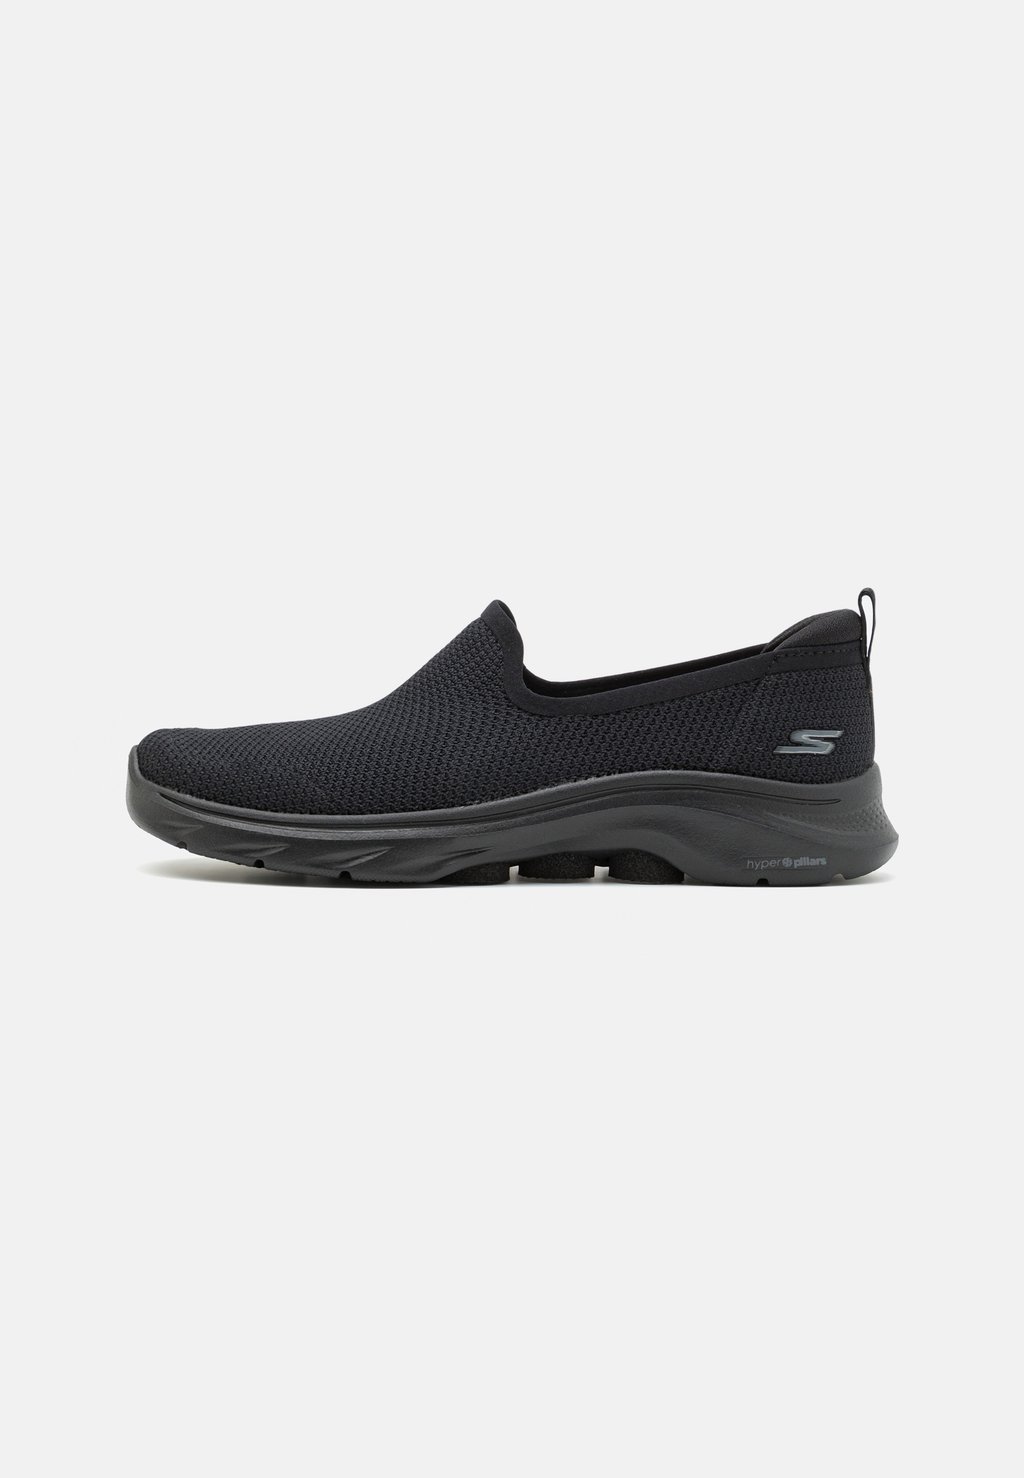 Обувь для ходьбы GO WALK 7 SLIP ON Skechers Performance, цвет black обувь для ходьбы go walk 7 slip on skechers performance цвет black